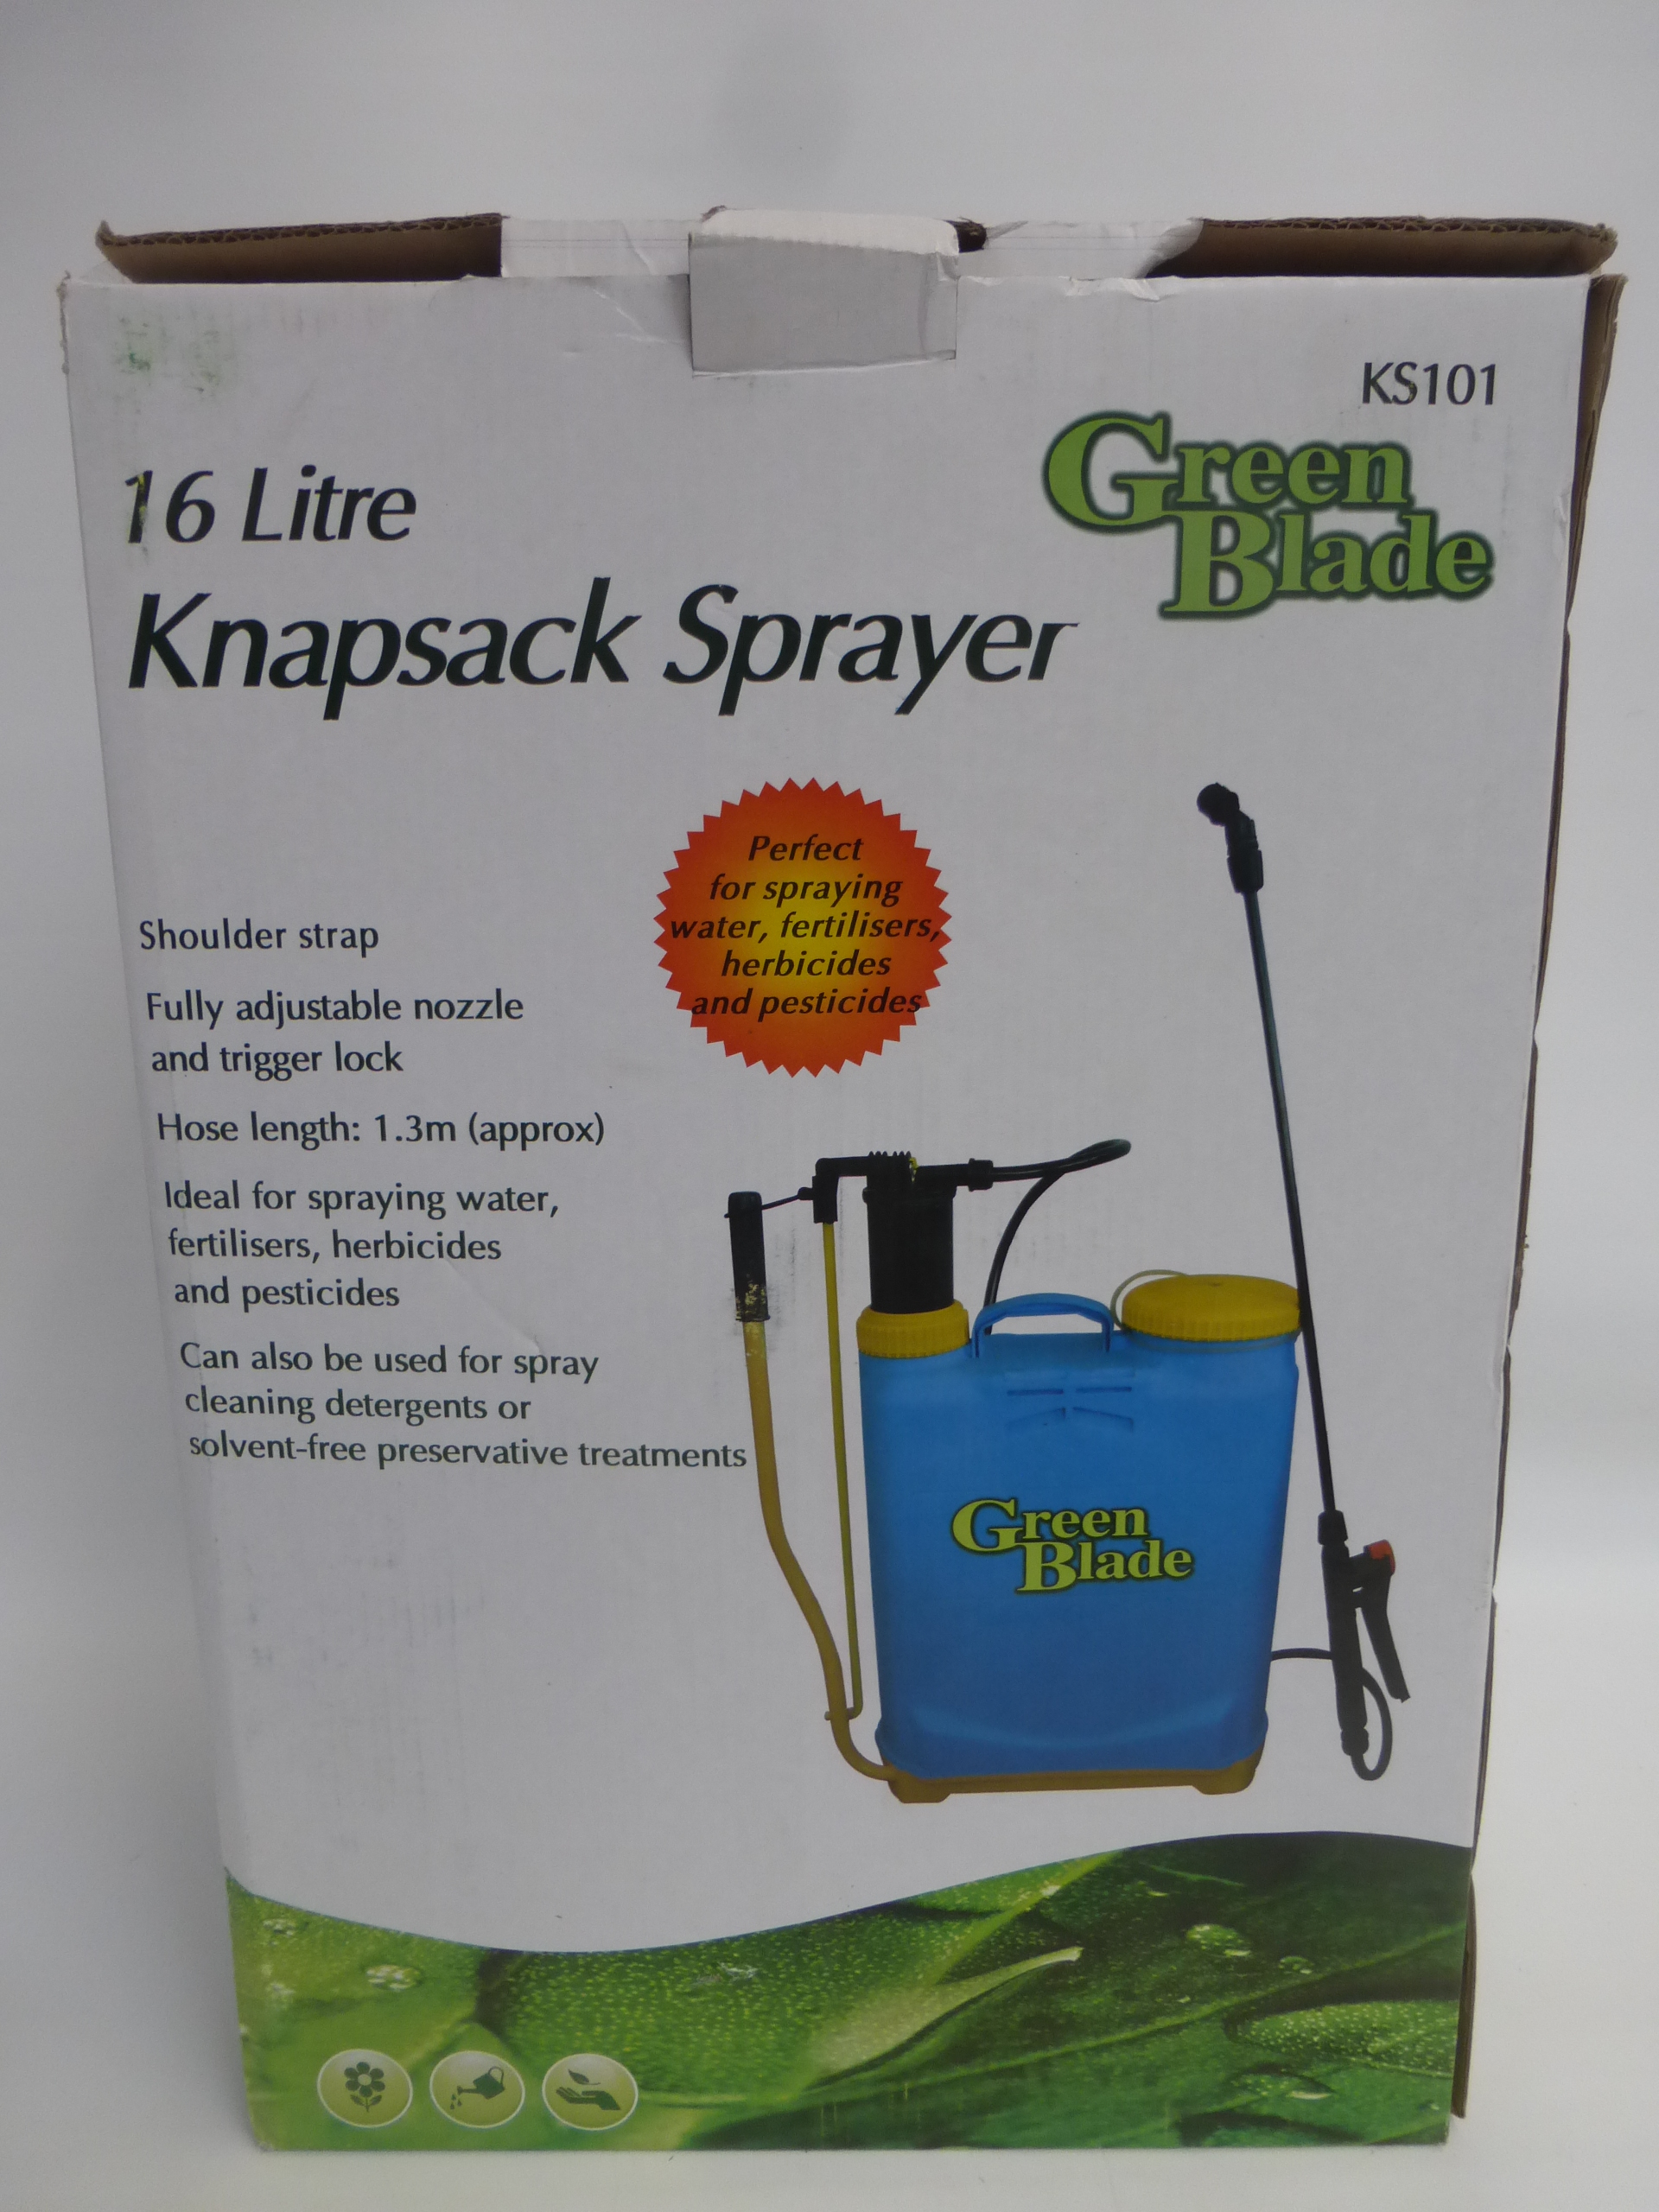 A knapsack pressure sprayer.